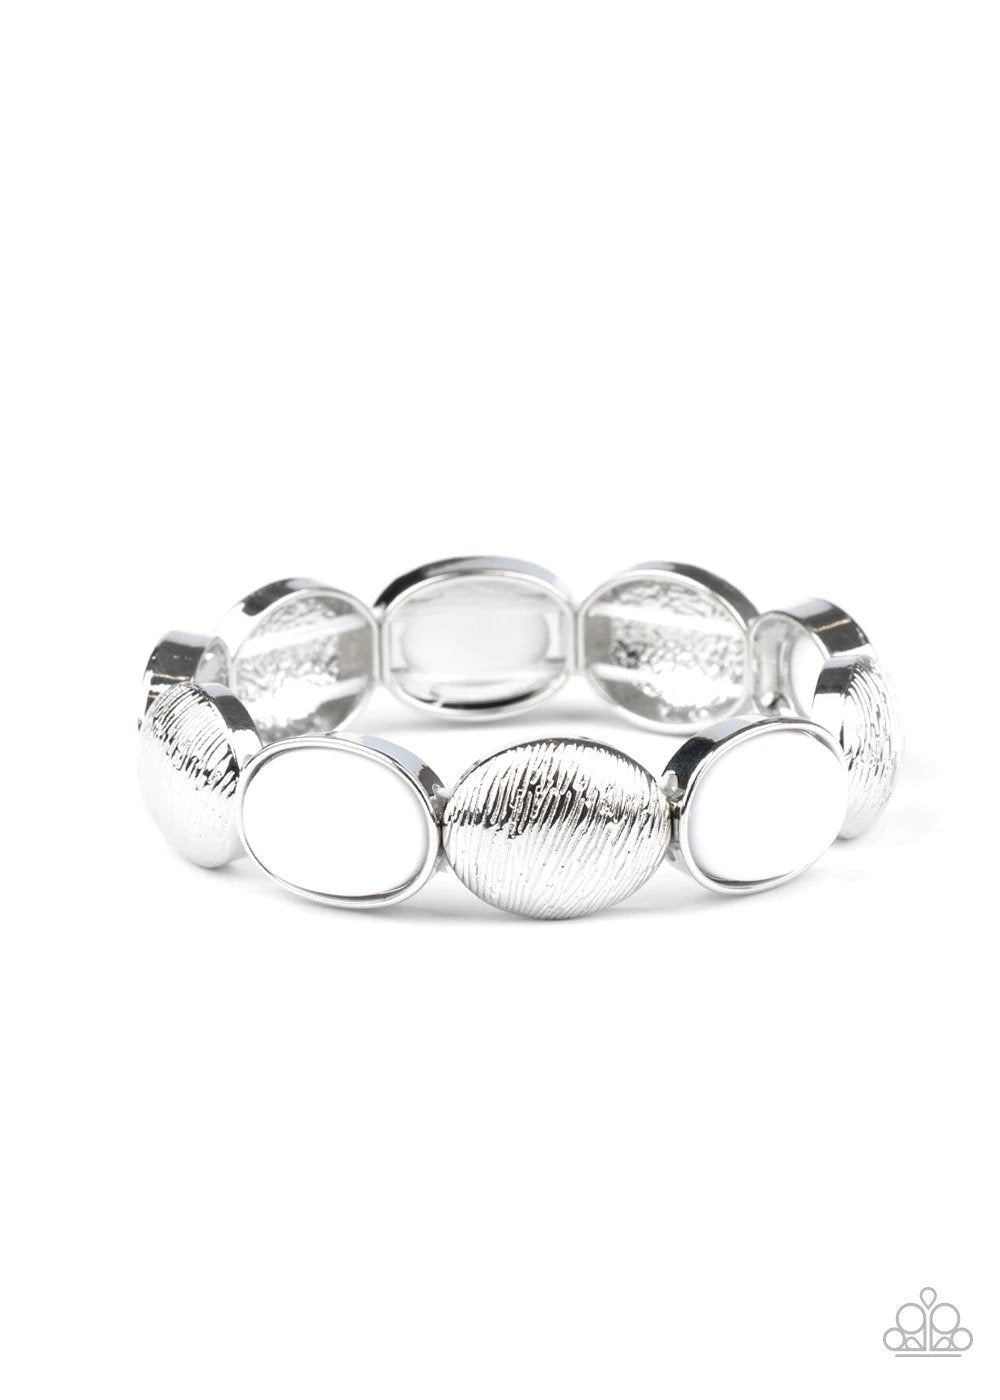 Decadently Dewy White Bracelet - Paparazzi Accessories- lightbox - CarasShop.com - $5 Jewelry by Cara Jewels